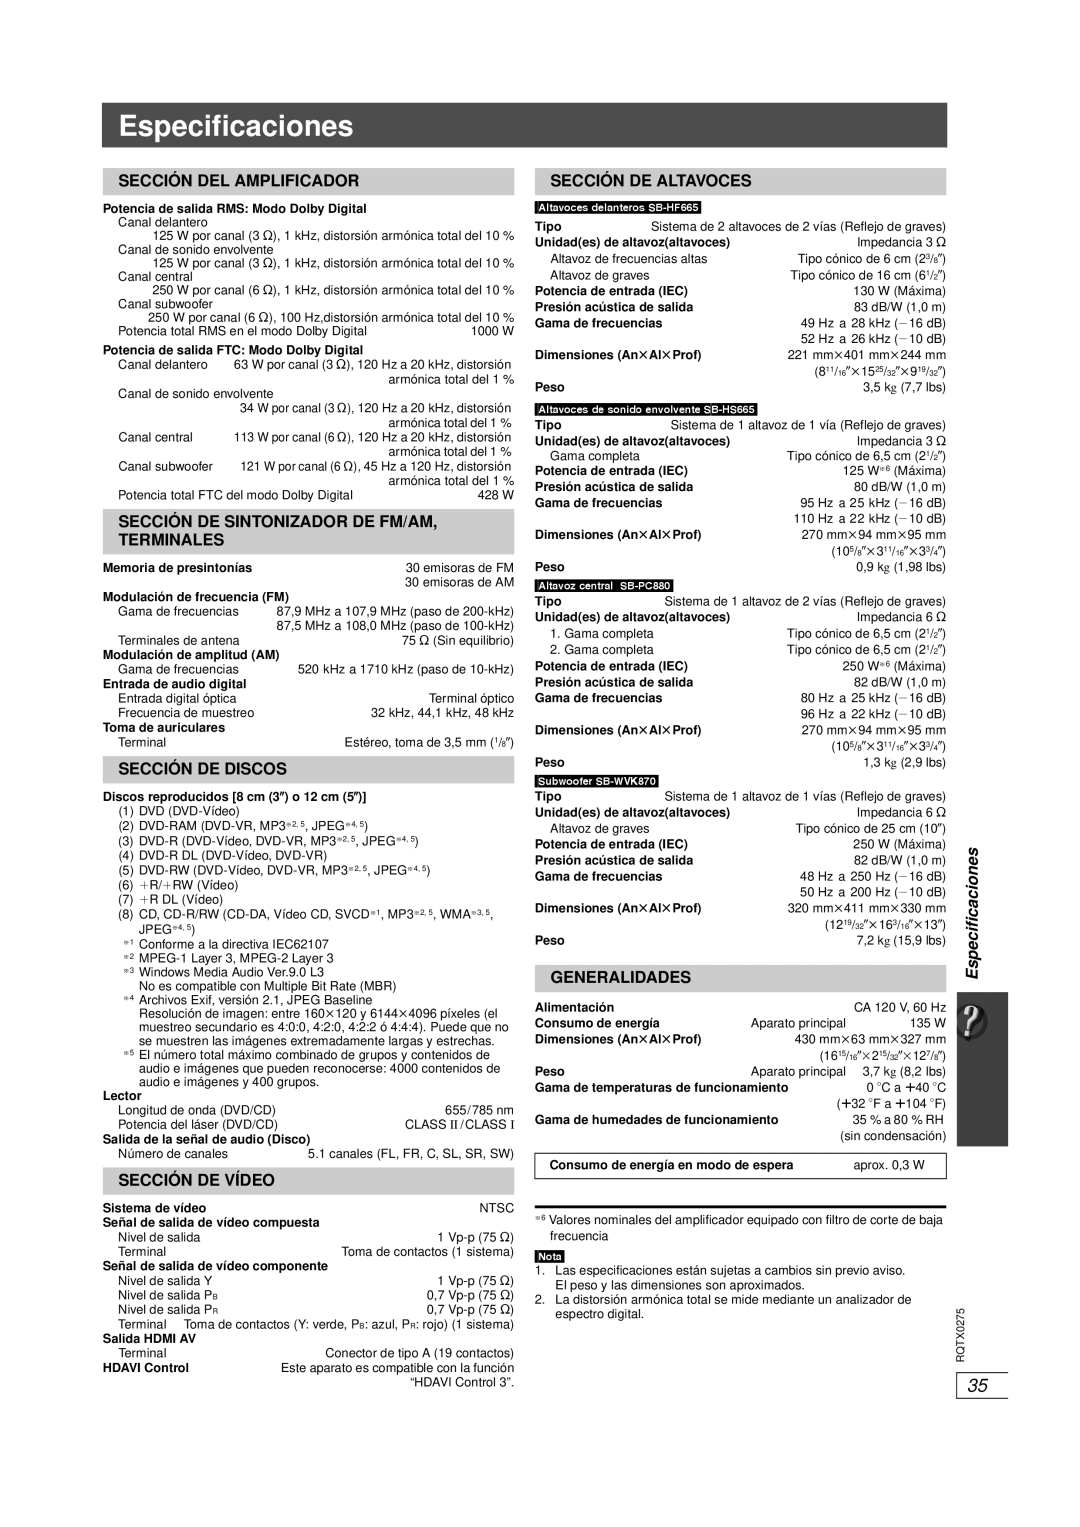 Panasonic SC-PT665 Especificaciones, Sección Del Amplificador, Sección De Sintonizador De Fm/Am, Terminales, Generalidades 